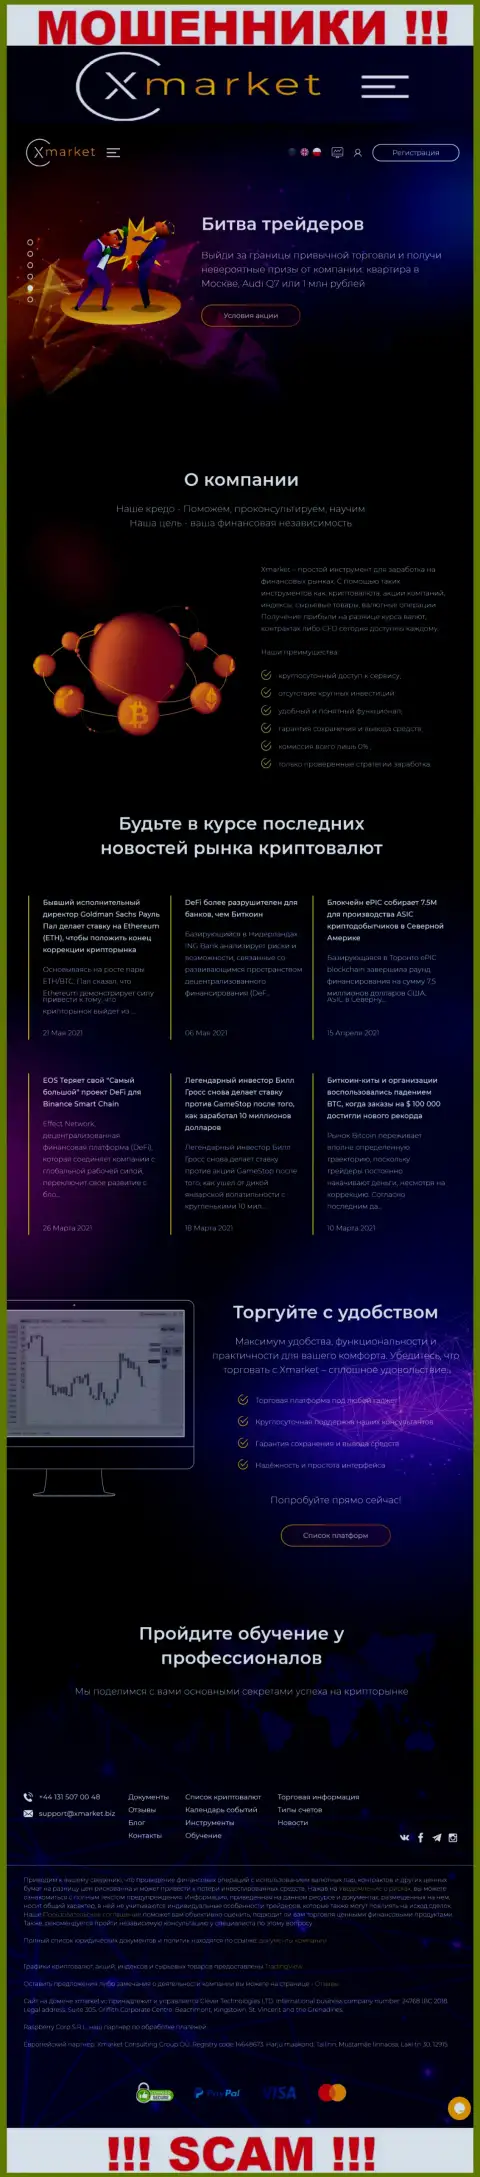 Официальный сайт мошенников и шулеров компании XMarket